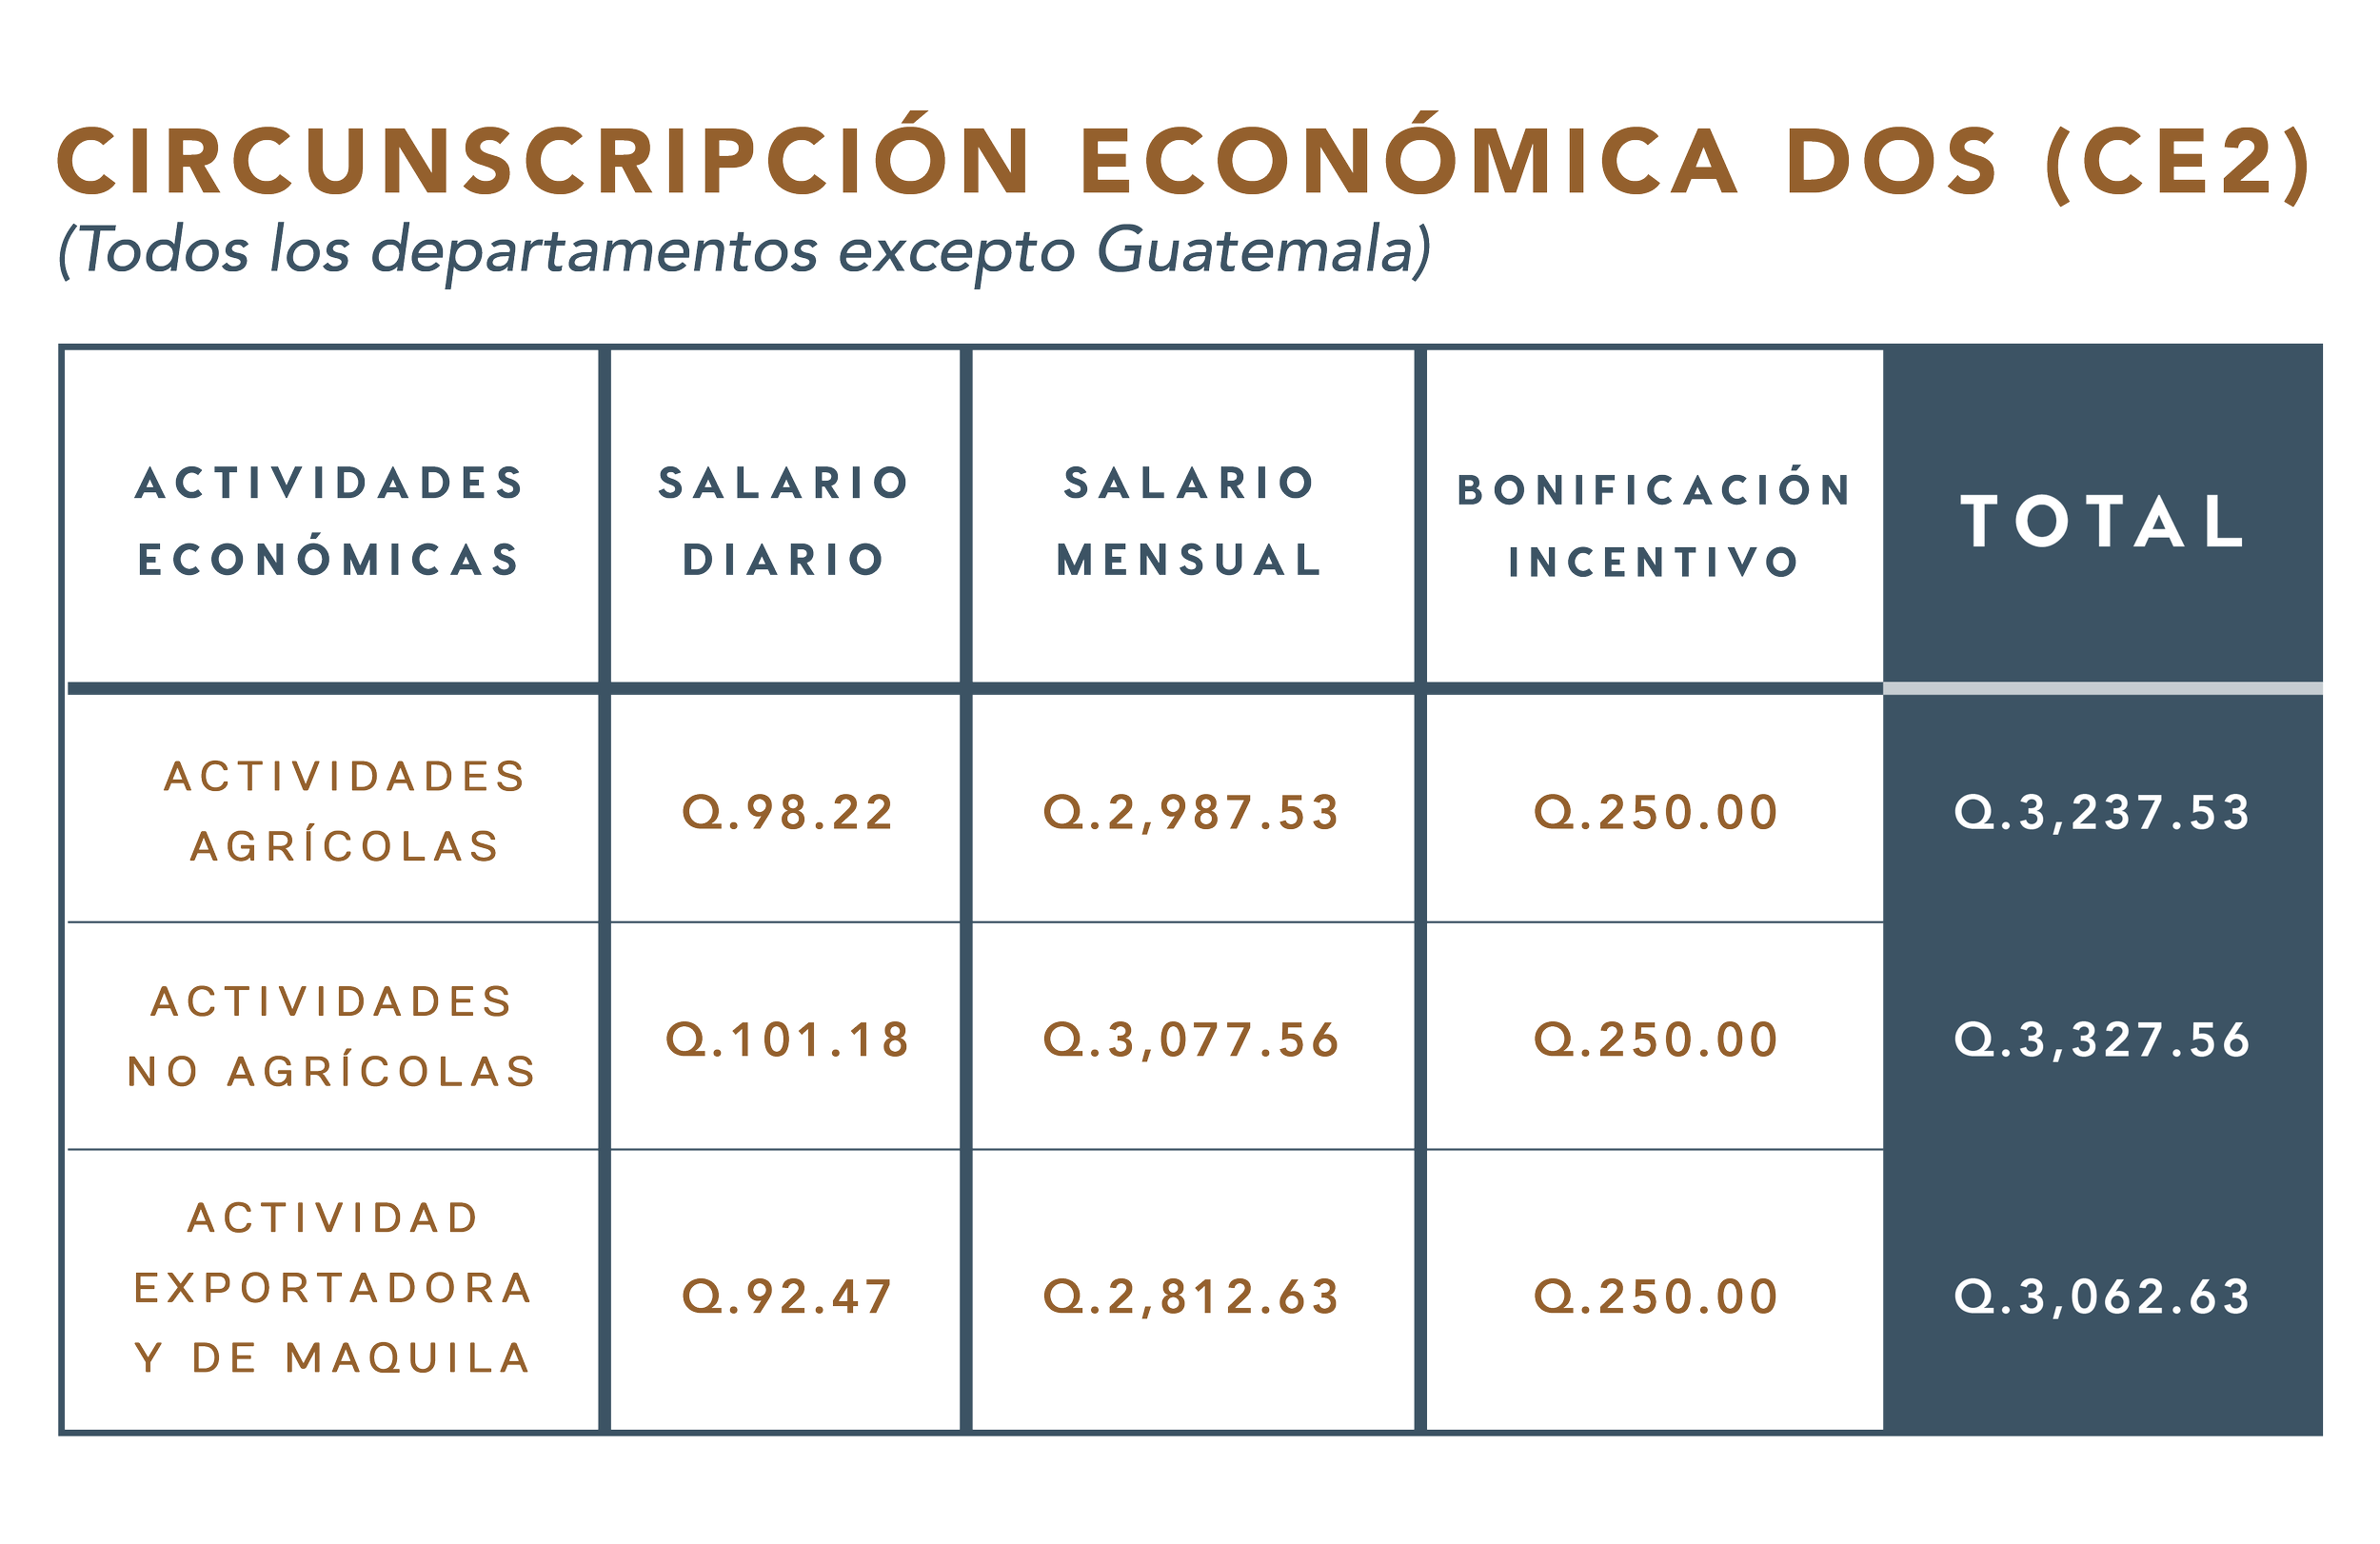 Cual Es El Salario Minimo En Guatemala 2023 Company Salaries 2023